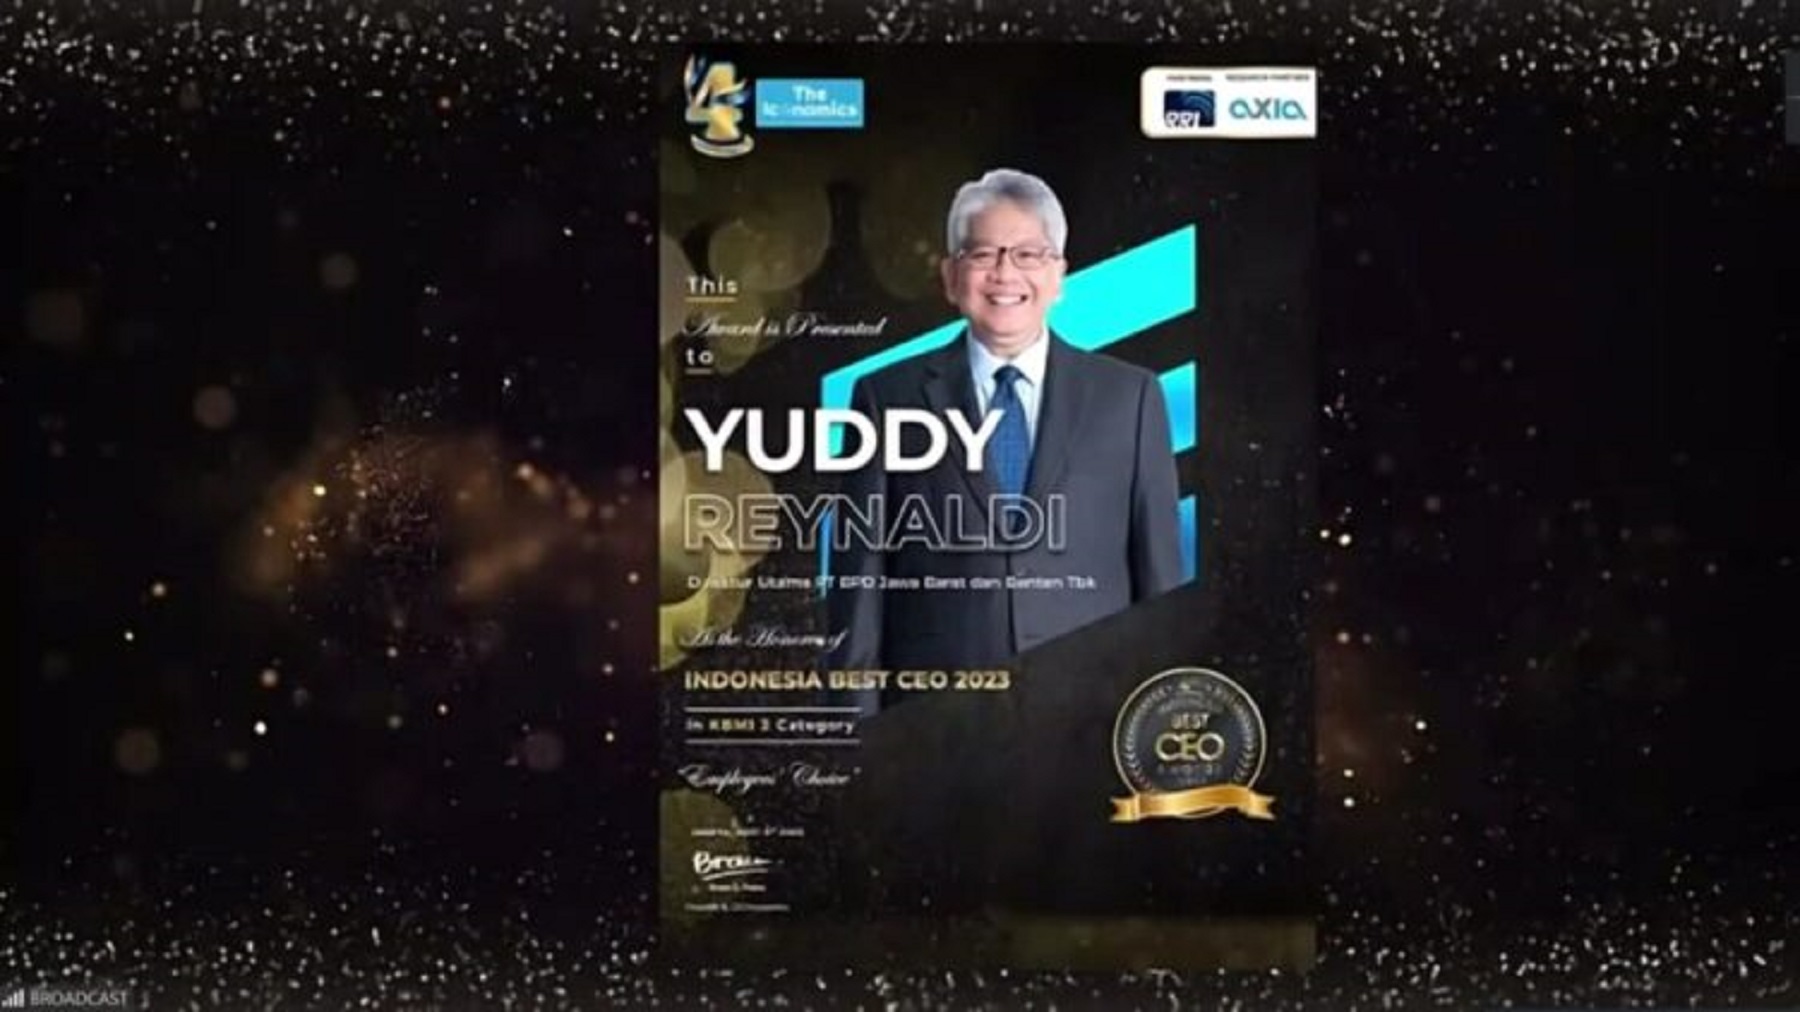 Direktur Utama bank bjb Yuddy Renaldi menyabet predikat Best CEO 2023 in KBMI 2 kategori Employees’ Choice